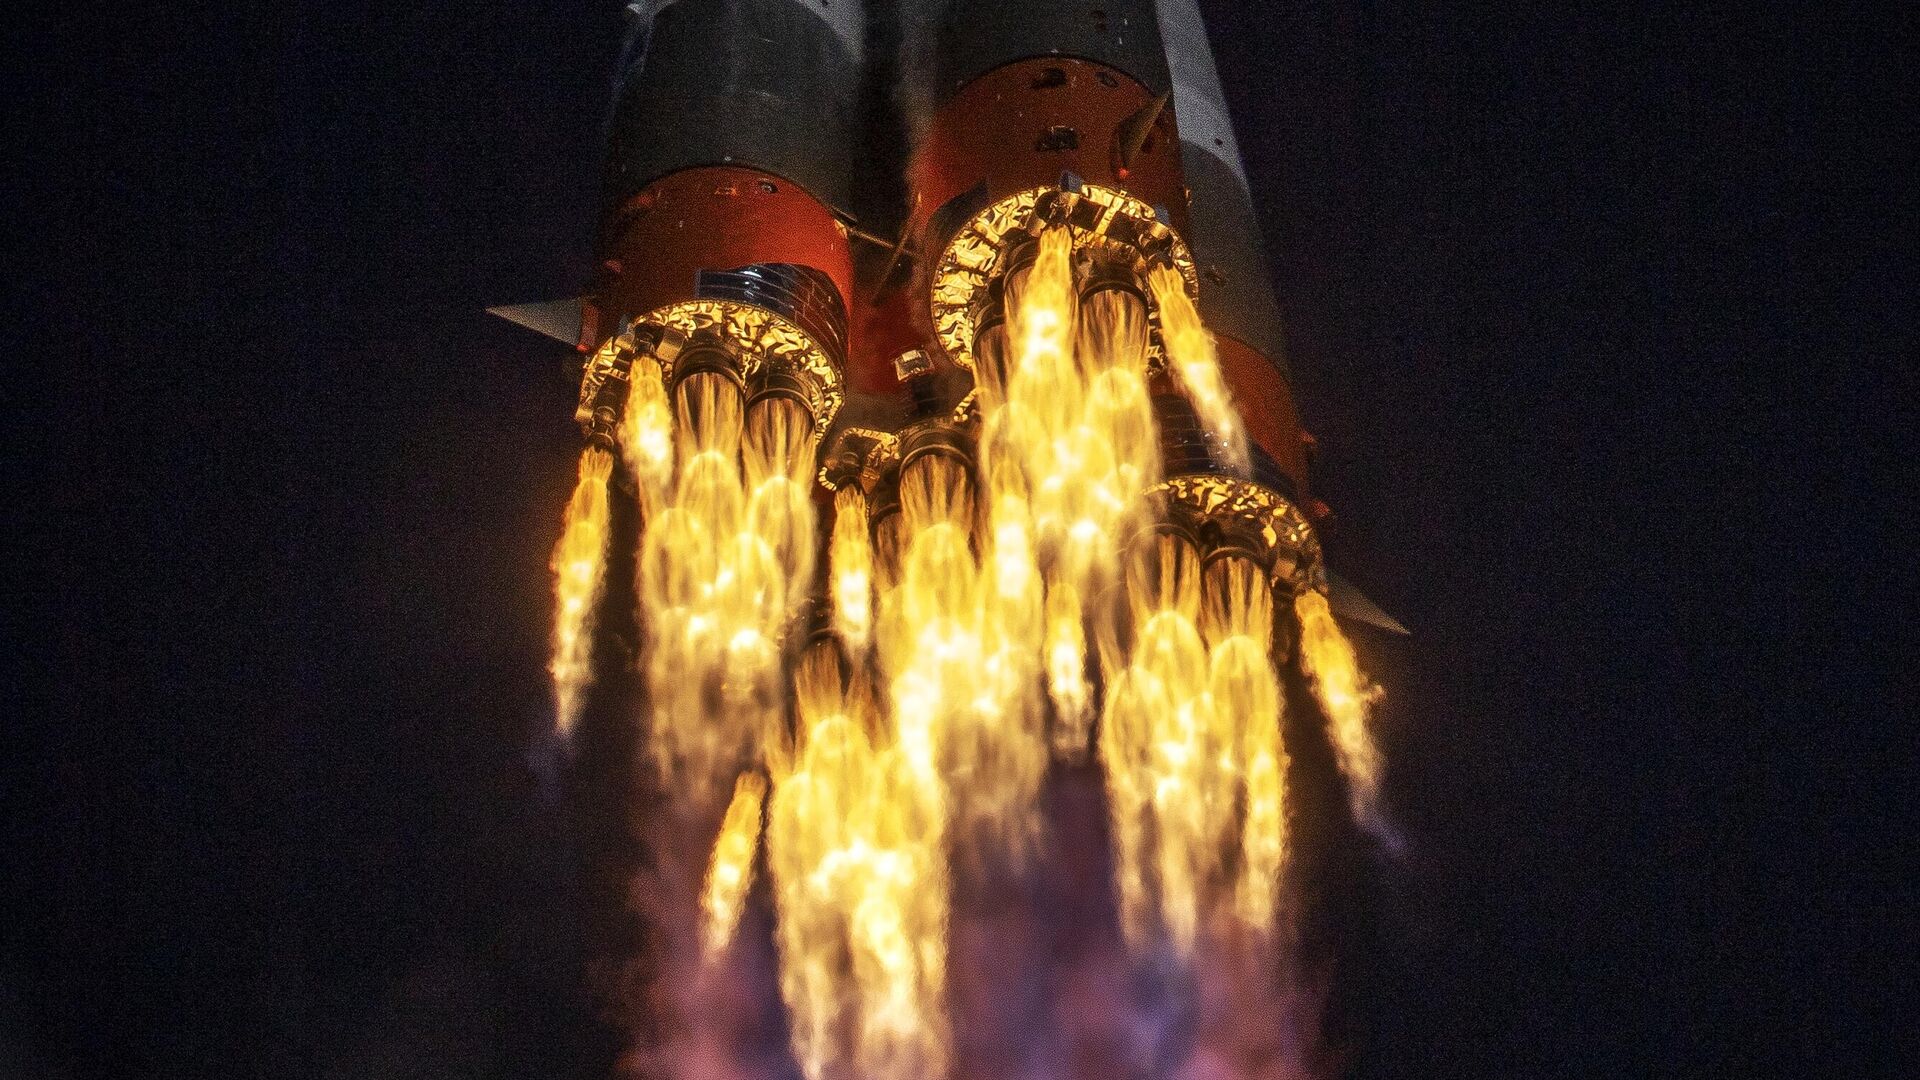 Ракета-носитель Союз-2.1а с транспортным пилотируемым кораблем Союз МС-17 во время запуска со стартовой площадки космодрома Байконур - РИА Новости, 1920, 16.10.2020